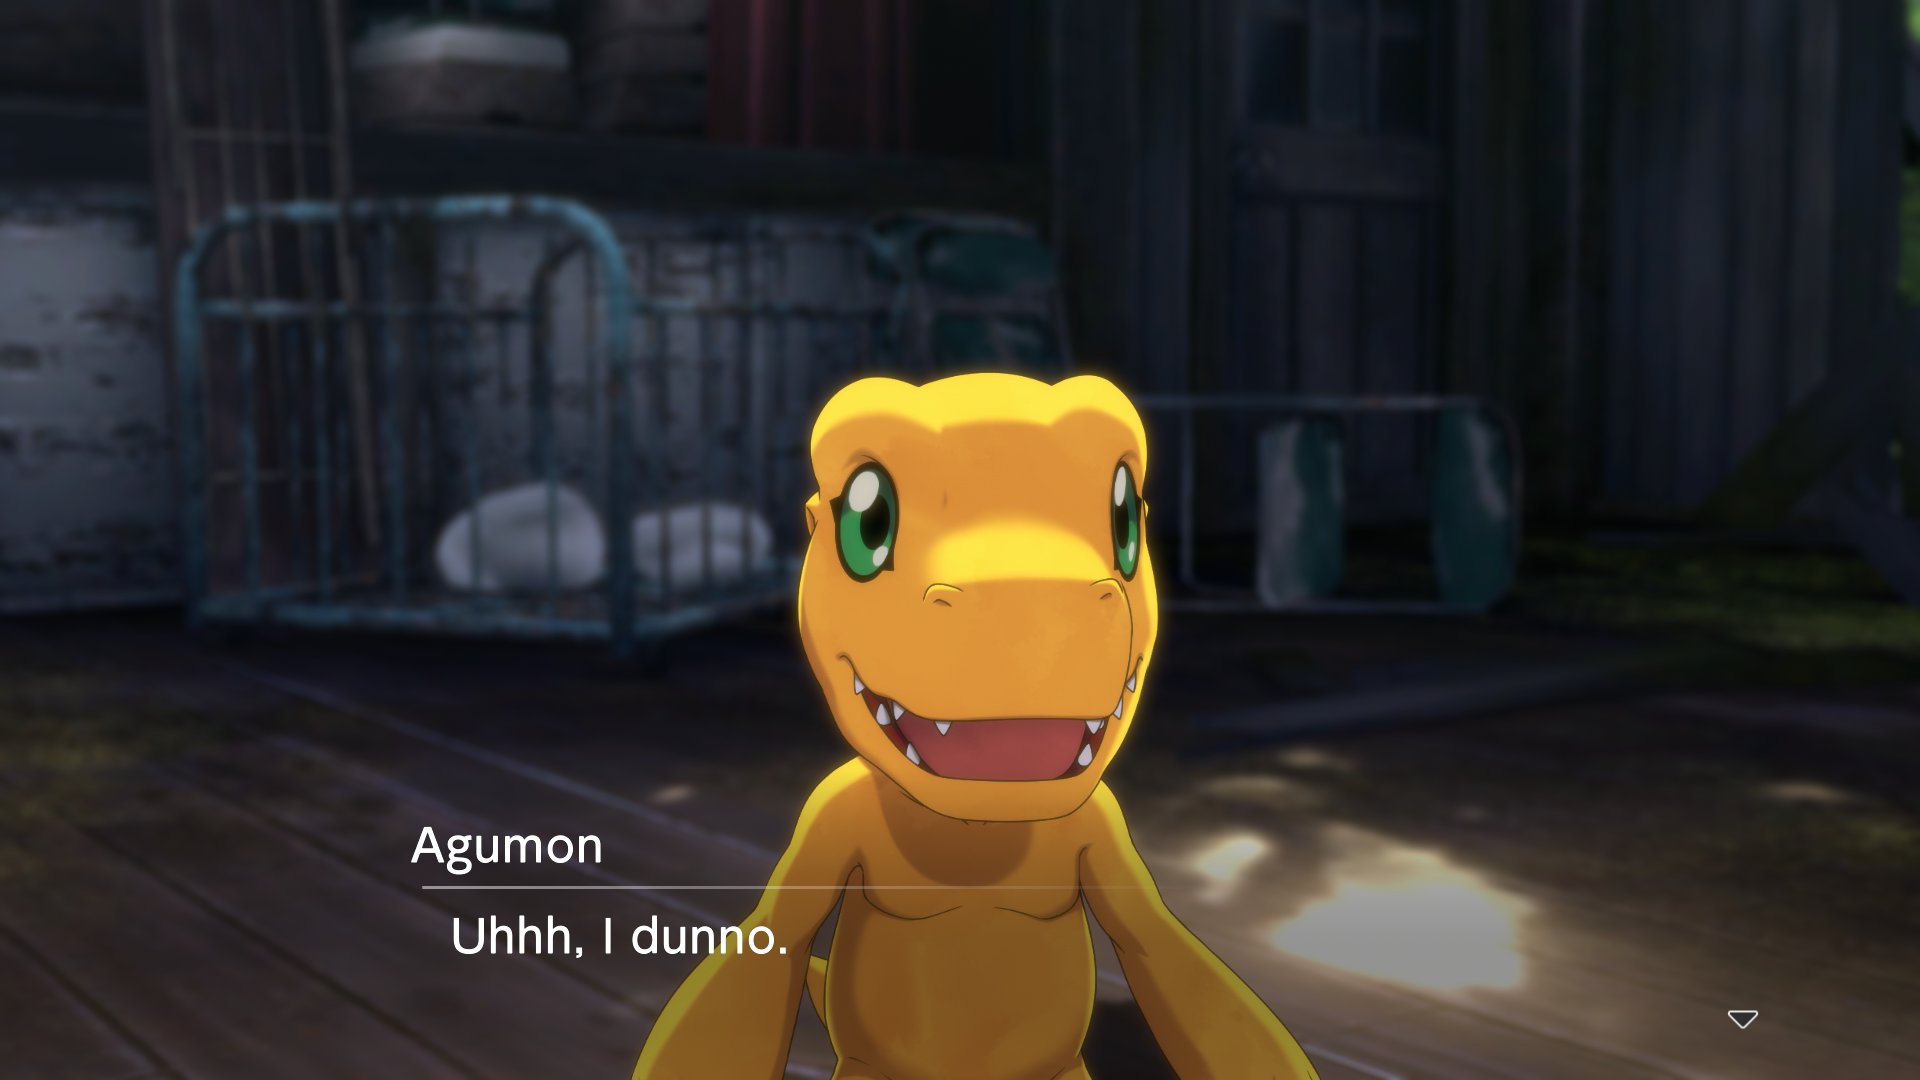 Digimon Survive: Como conseguir Greymon e tudo sobre digievolução